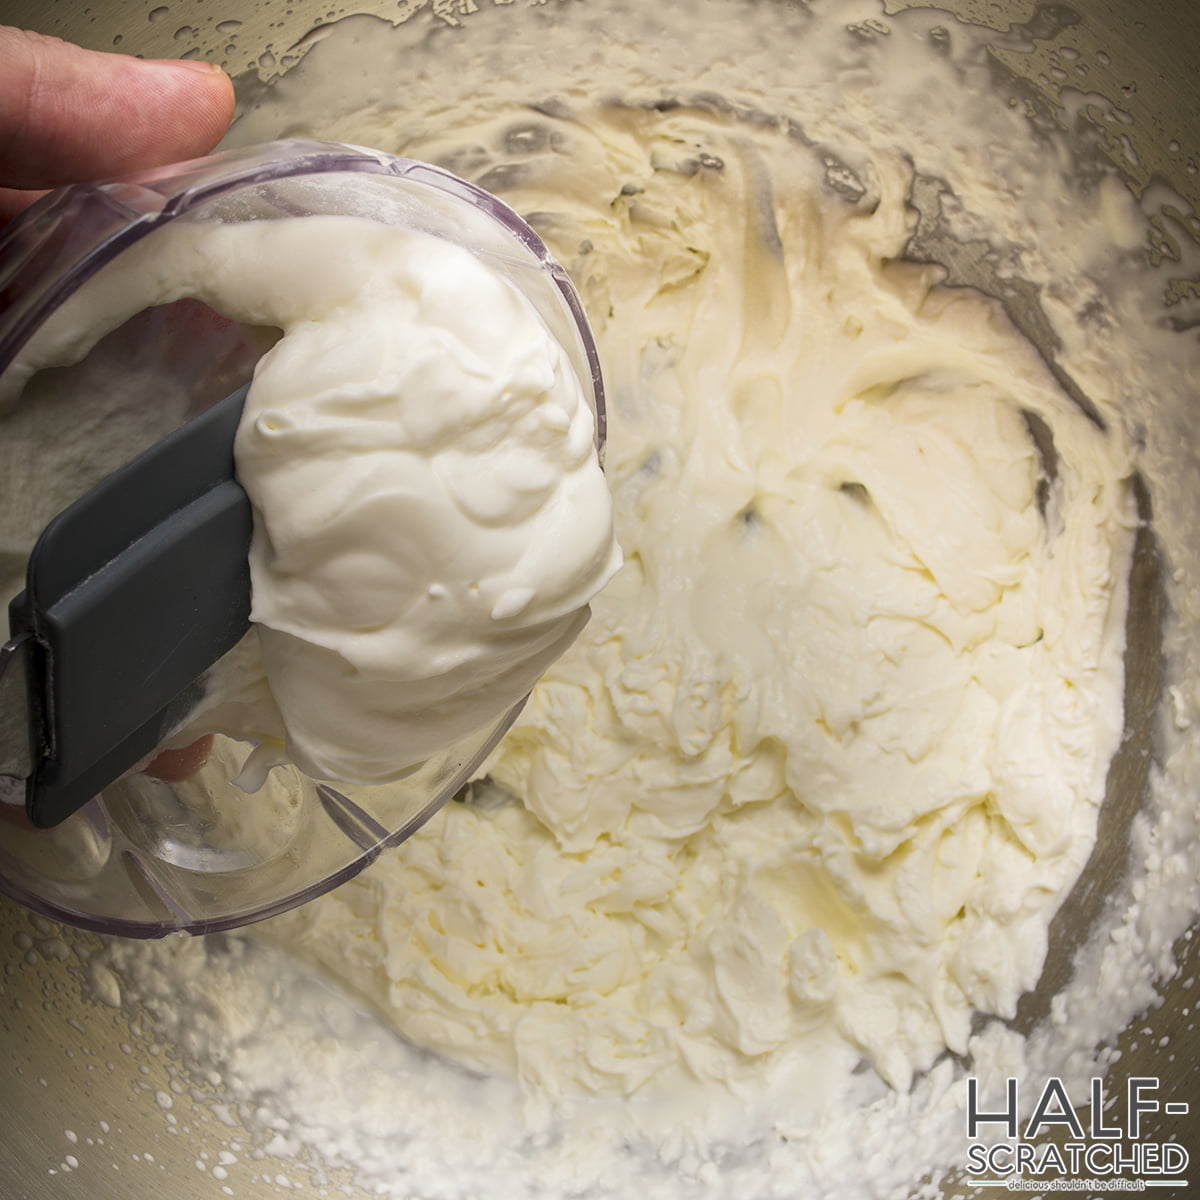 Adding the sour cream